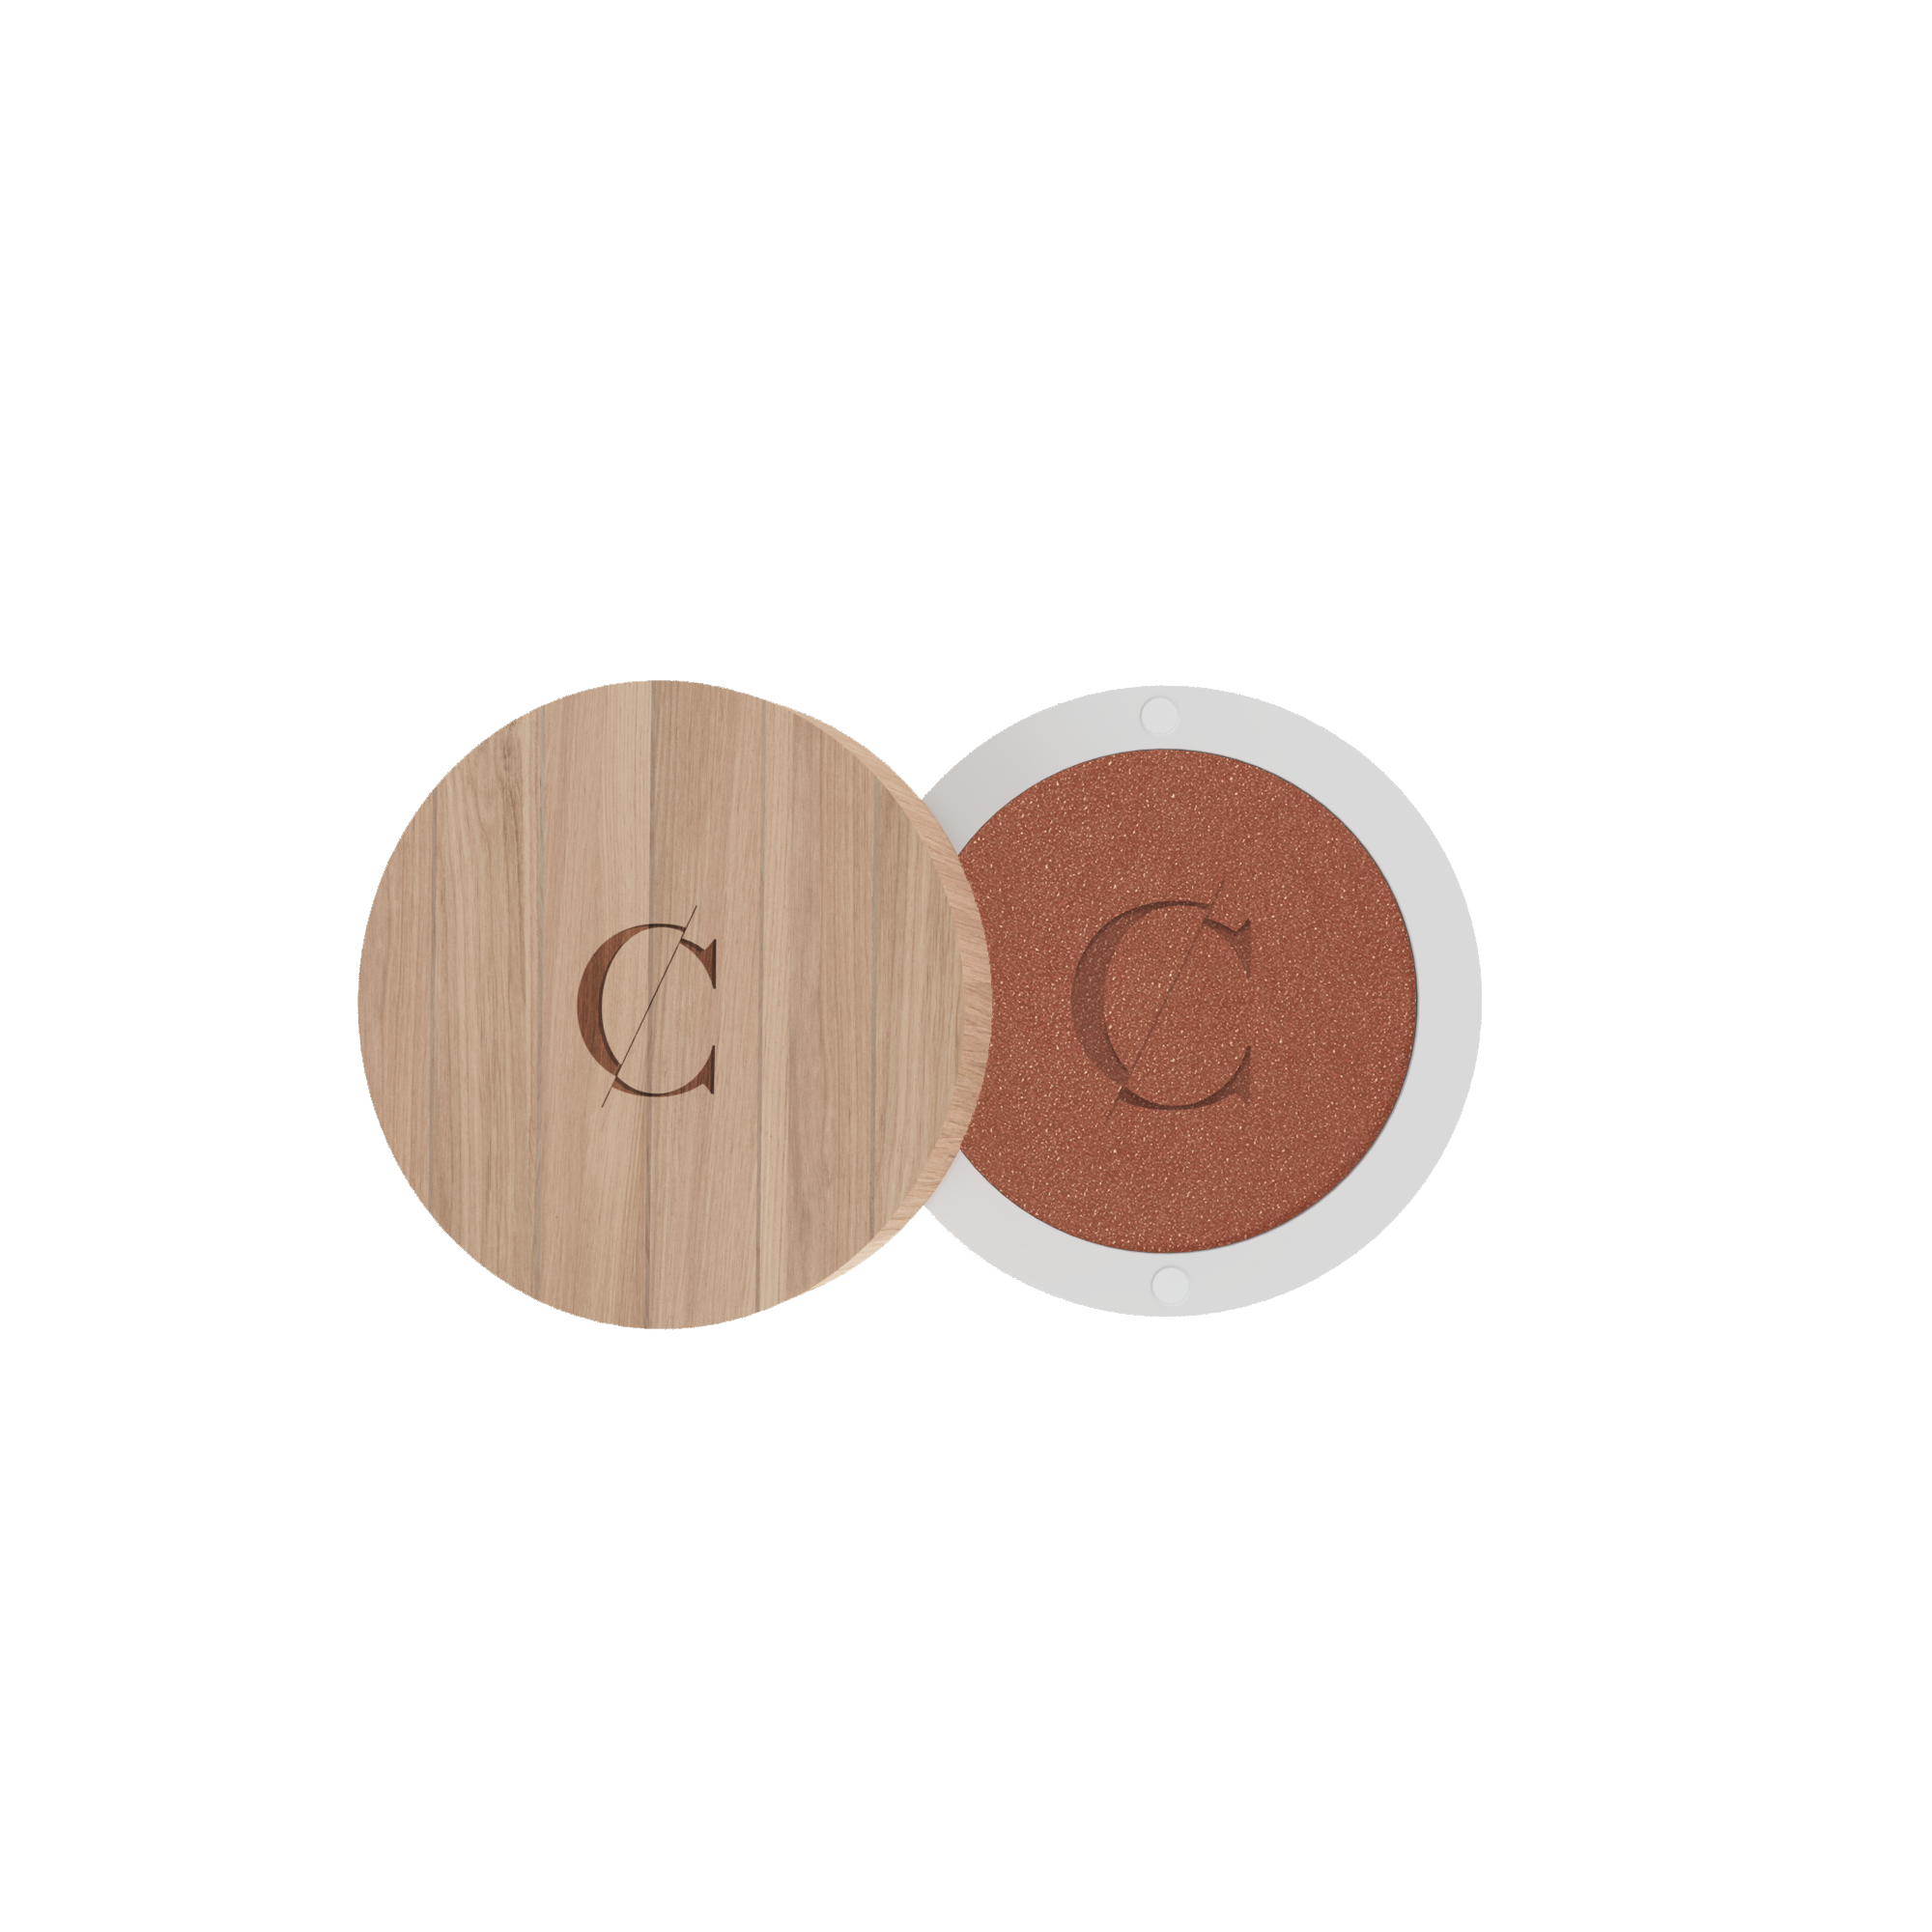 De natuurlijke en biologische oogschaduw van Couleur Caramel bevat een De natuurlijke en biologische oogschaduw van Couleur Caramel bevat een sterke concentratie van pigmenten.  concentratie van pigmenten. 